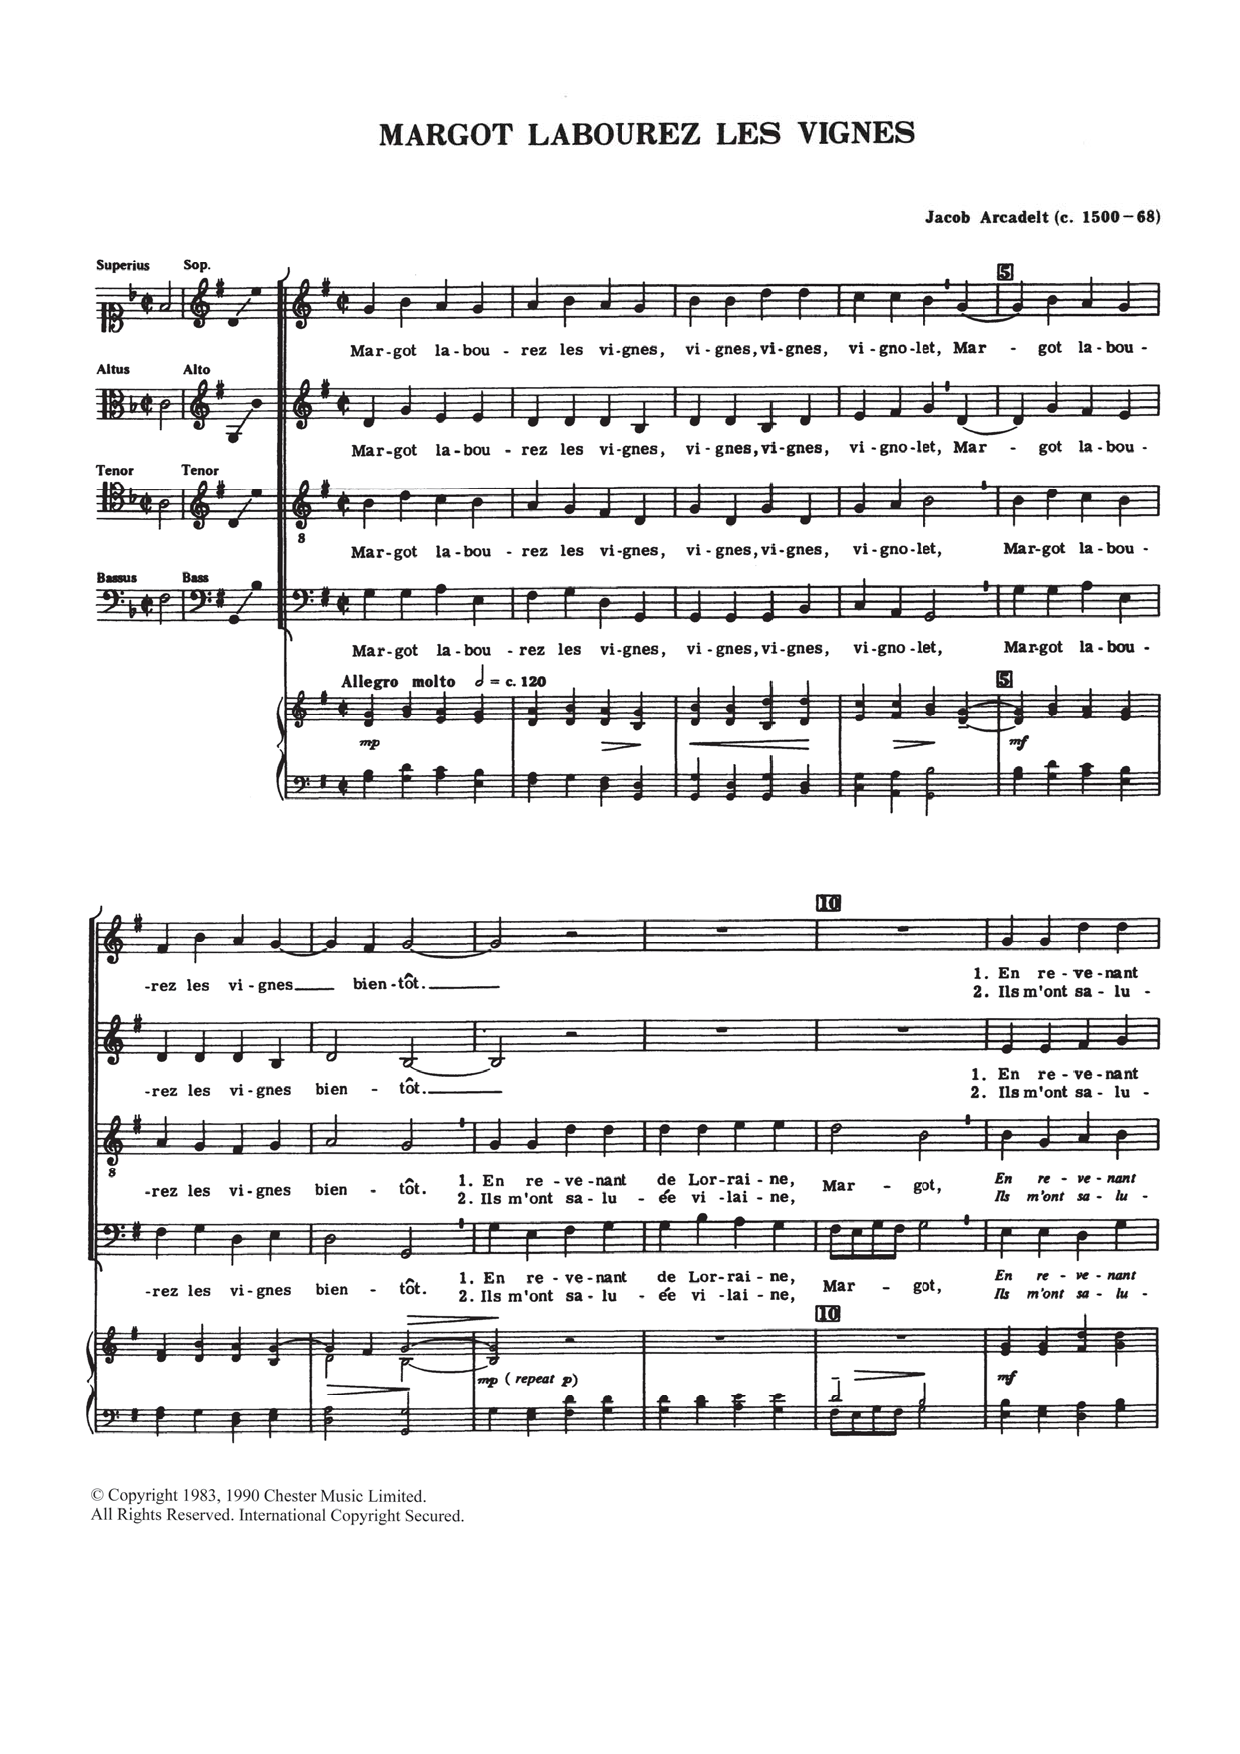 Jacob Arcadelt Margot Labourez Les Vignes Sheet Music Notes & Chords for Choir - Download or Print PDF